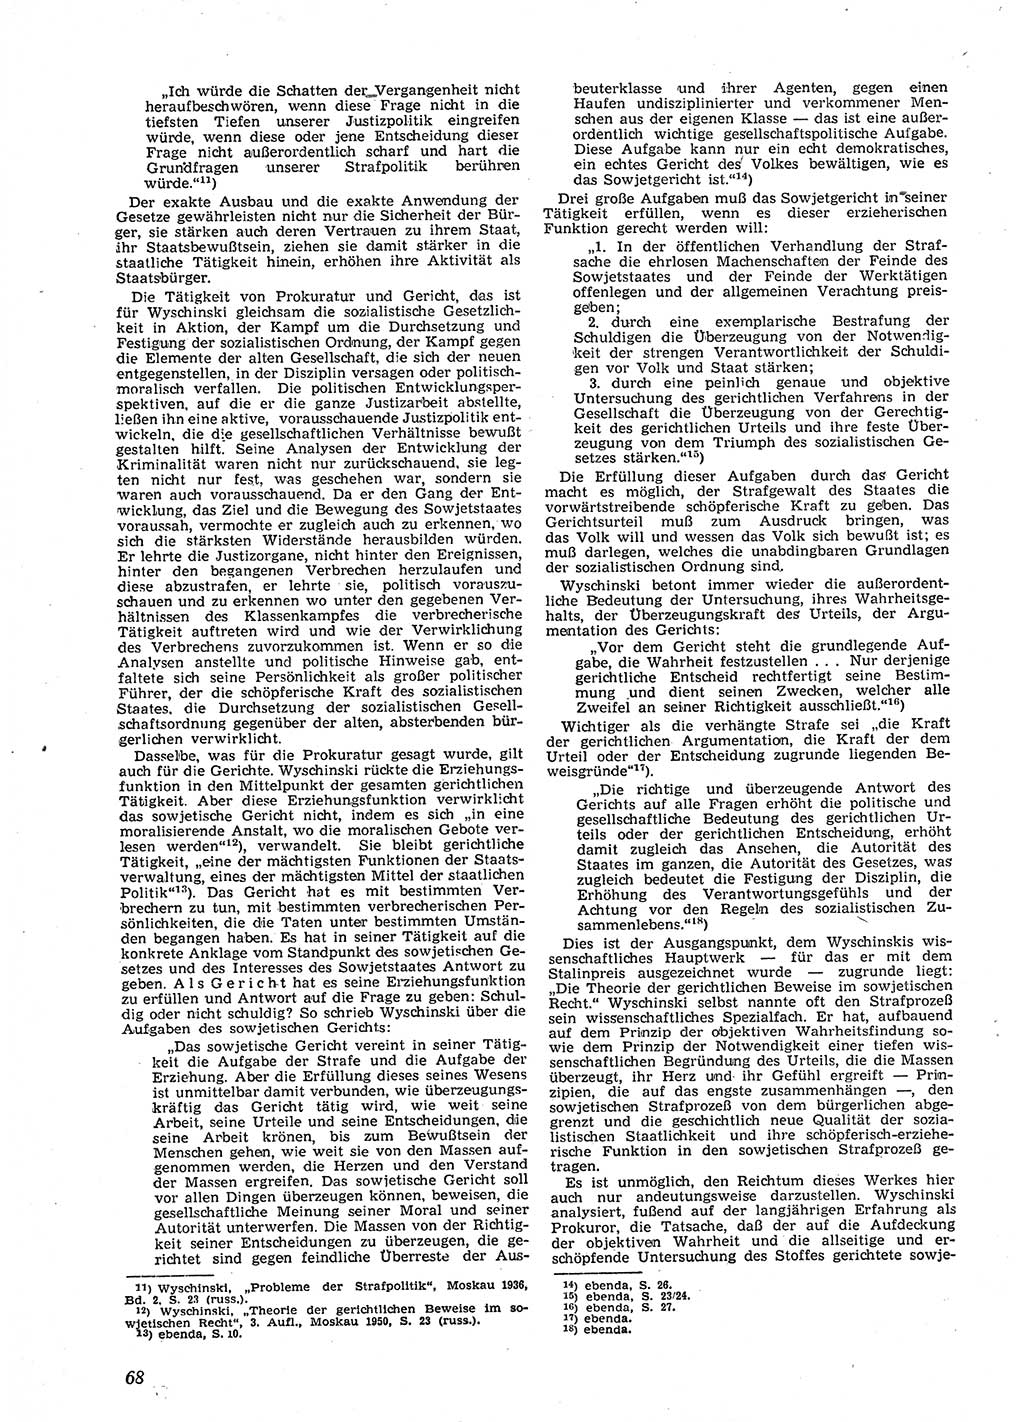 Neue Justiz (NJ), Zeitschrift für Recht und Rechtswissenschaft [Deutsche Demokratische Republik (DDR)], 9. Jahrgang 1955, Seite 68 (NJ DDR 1955, S. 68)